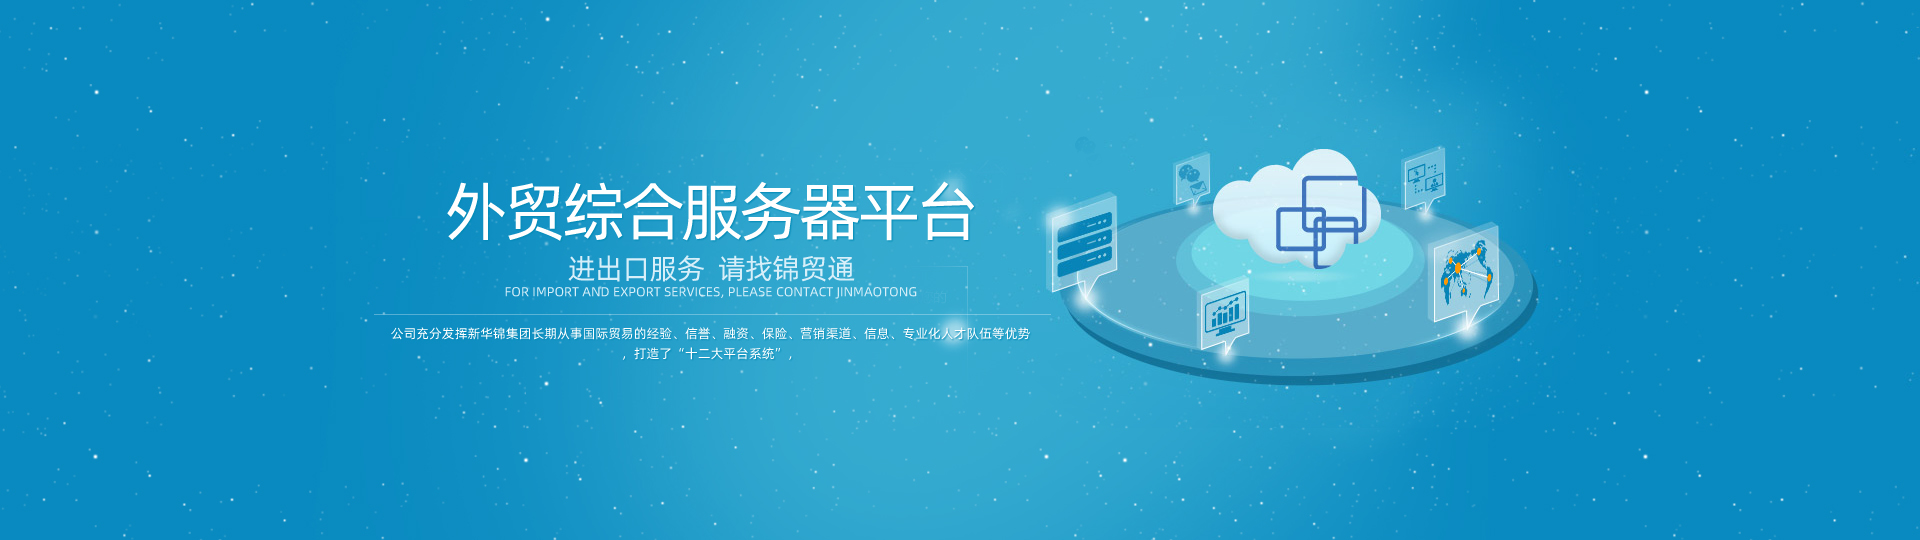 中(zhōng)小(xiǎo)微服務平台